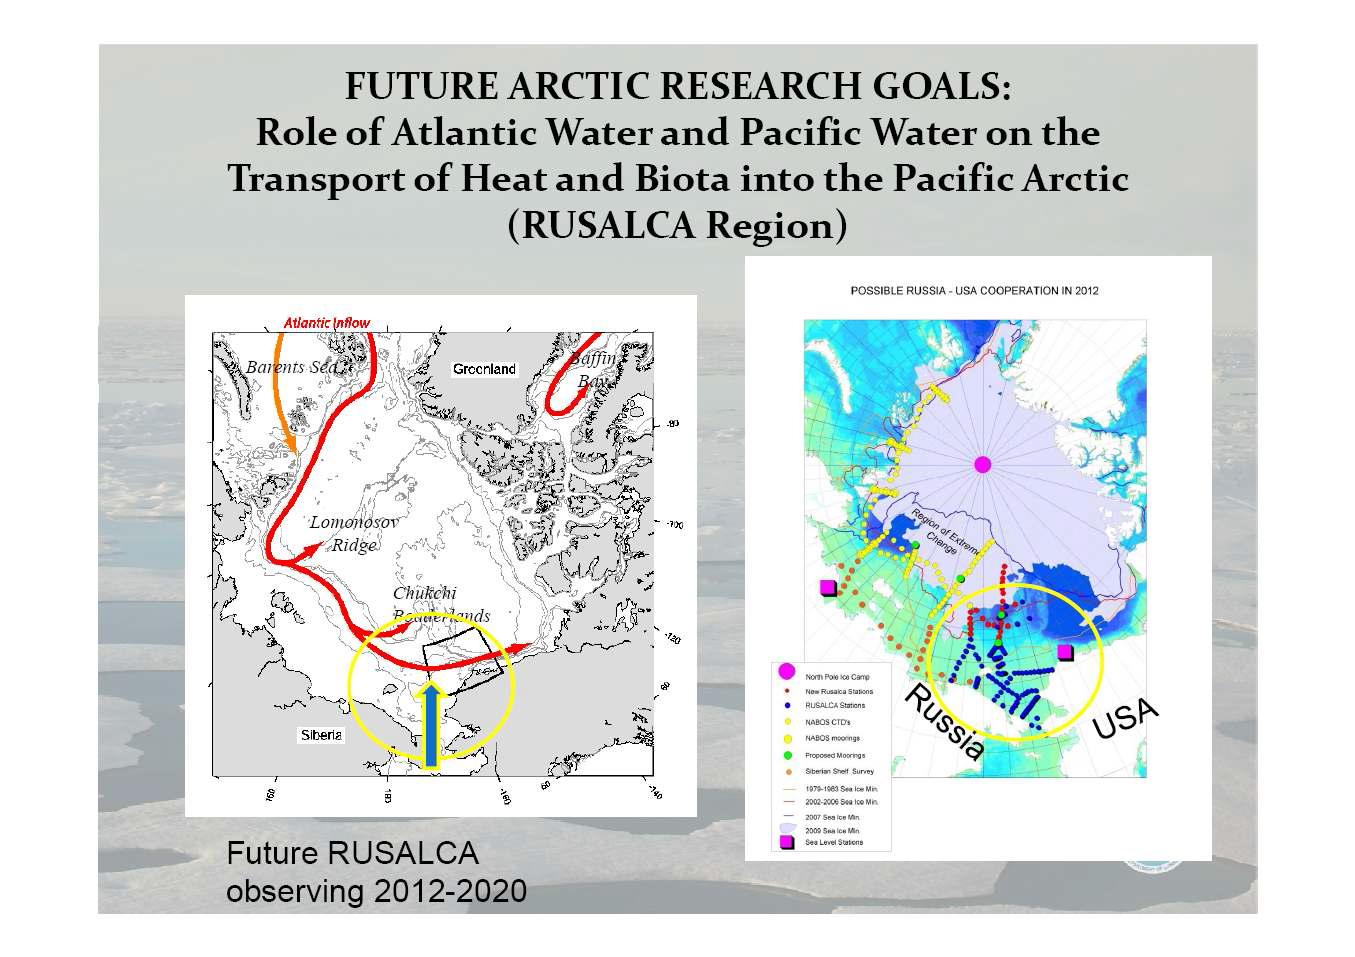 2012년부터 2020년까지 새로운 연구목적으로 수행될 연구조사해역